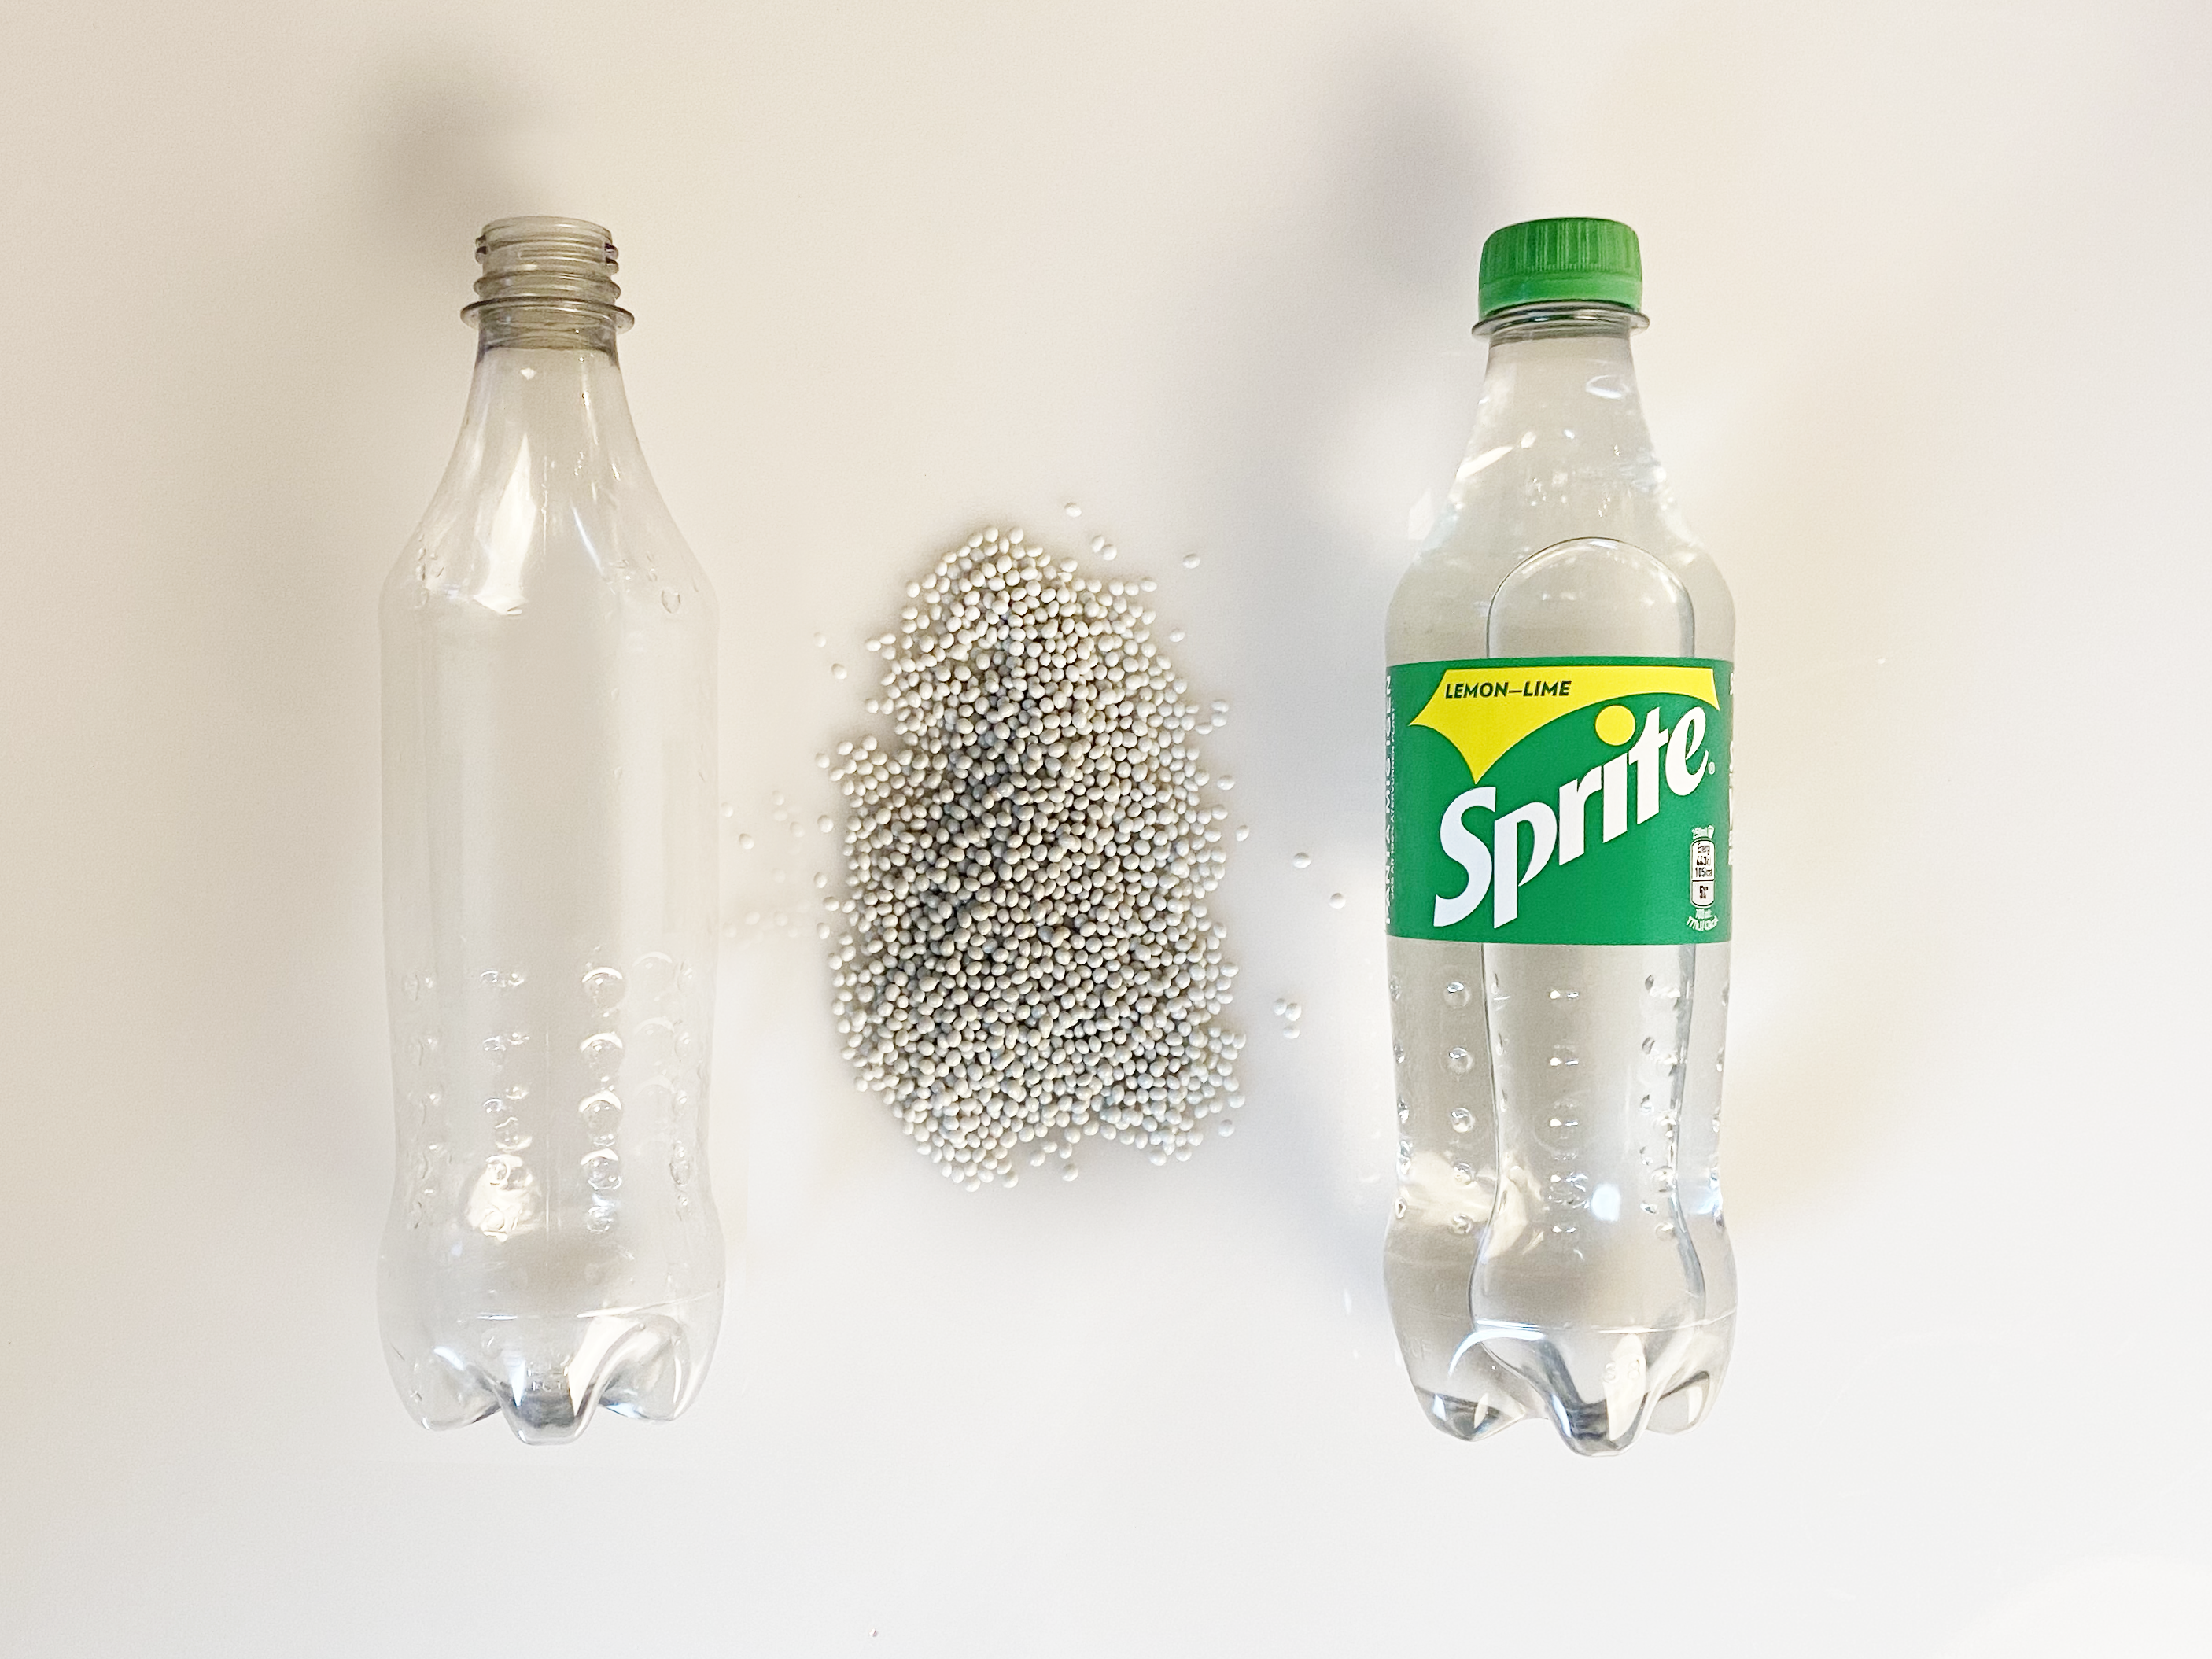 Tom, etiketløs plastikflaske ligger ved siden af små perler samt en klar Sprite-flaske af genanvendt plastik